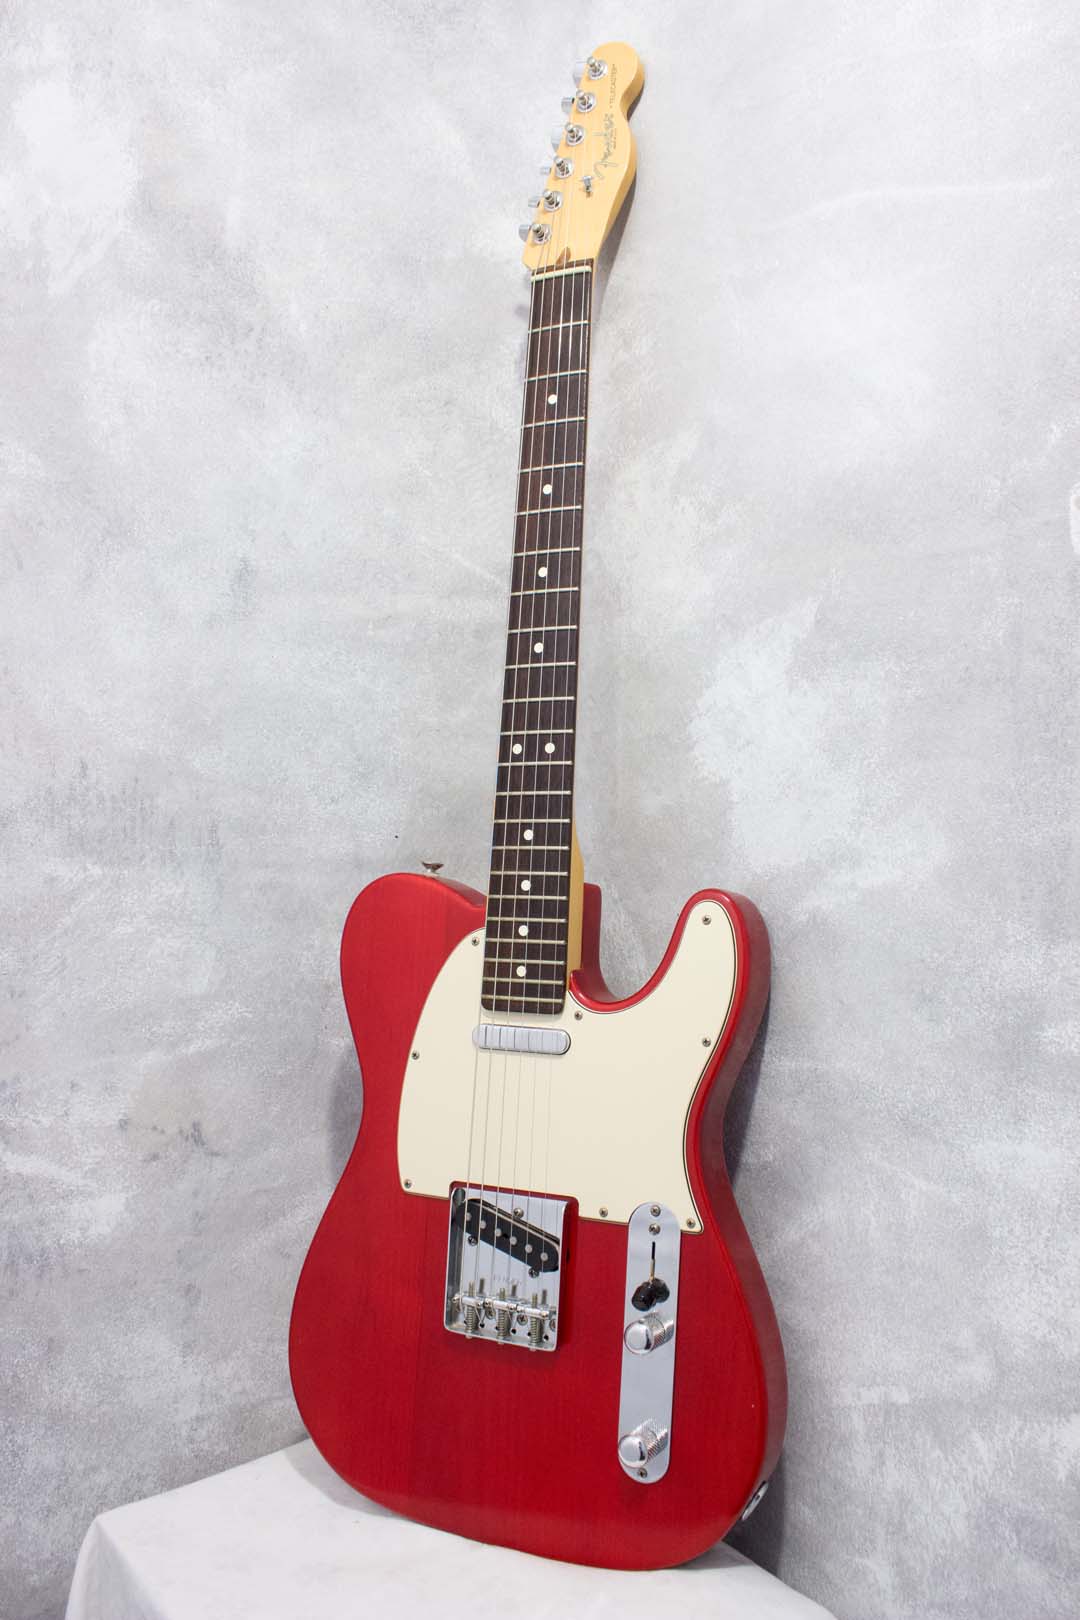 Fender Highway One Telecaster Satin Trans Red 2005 – Topshelf